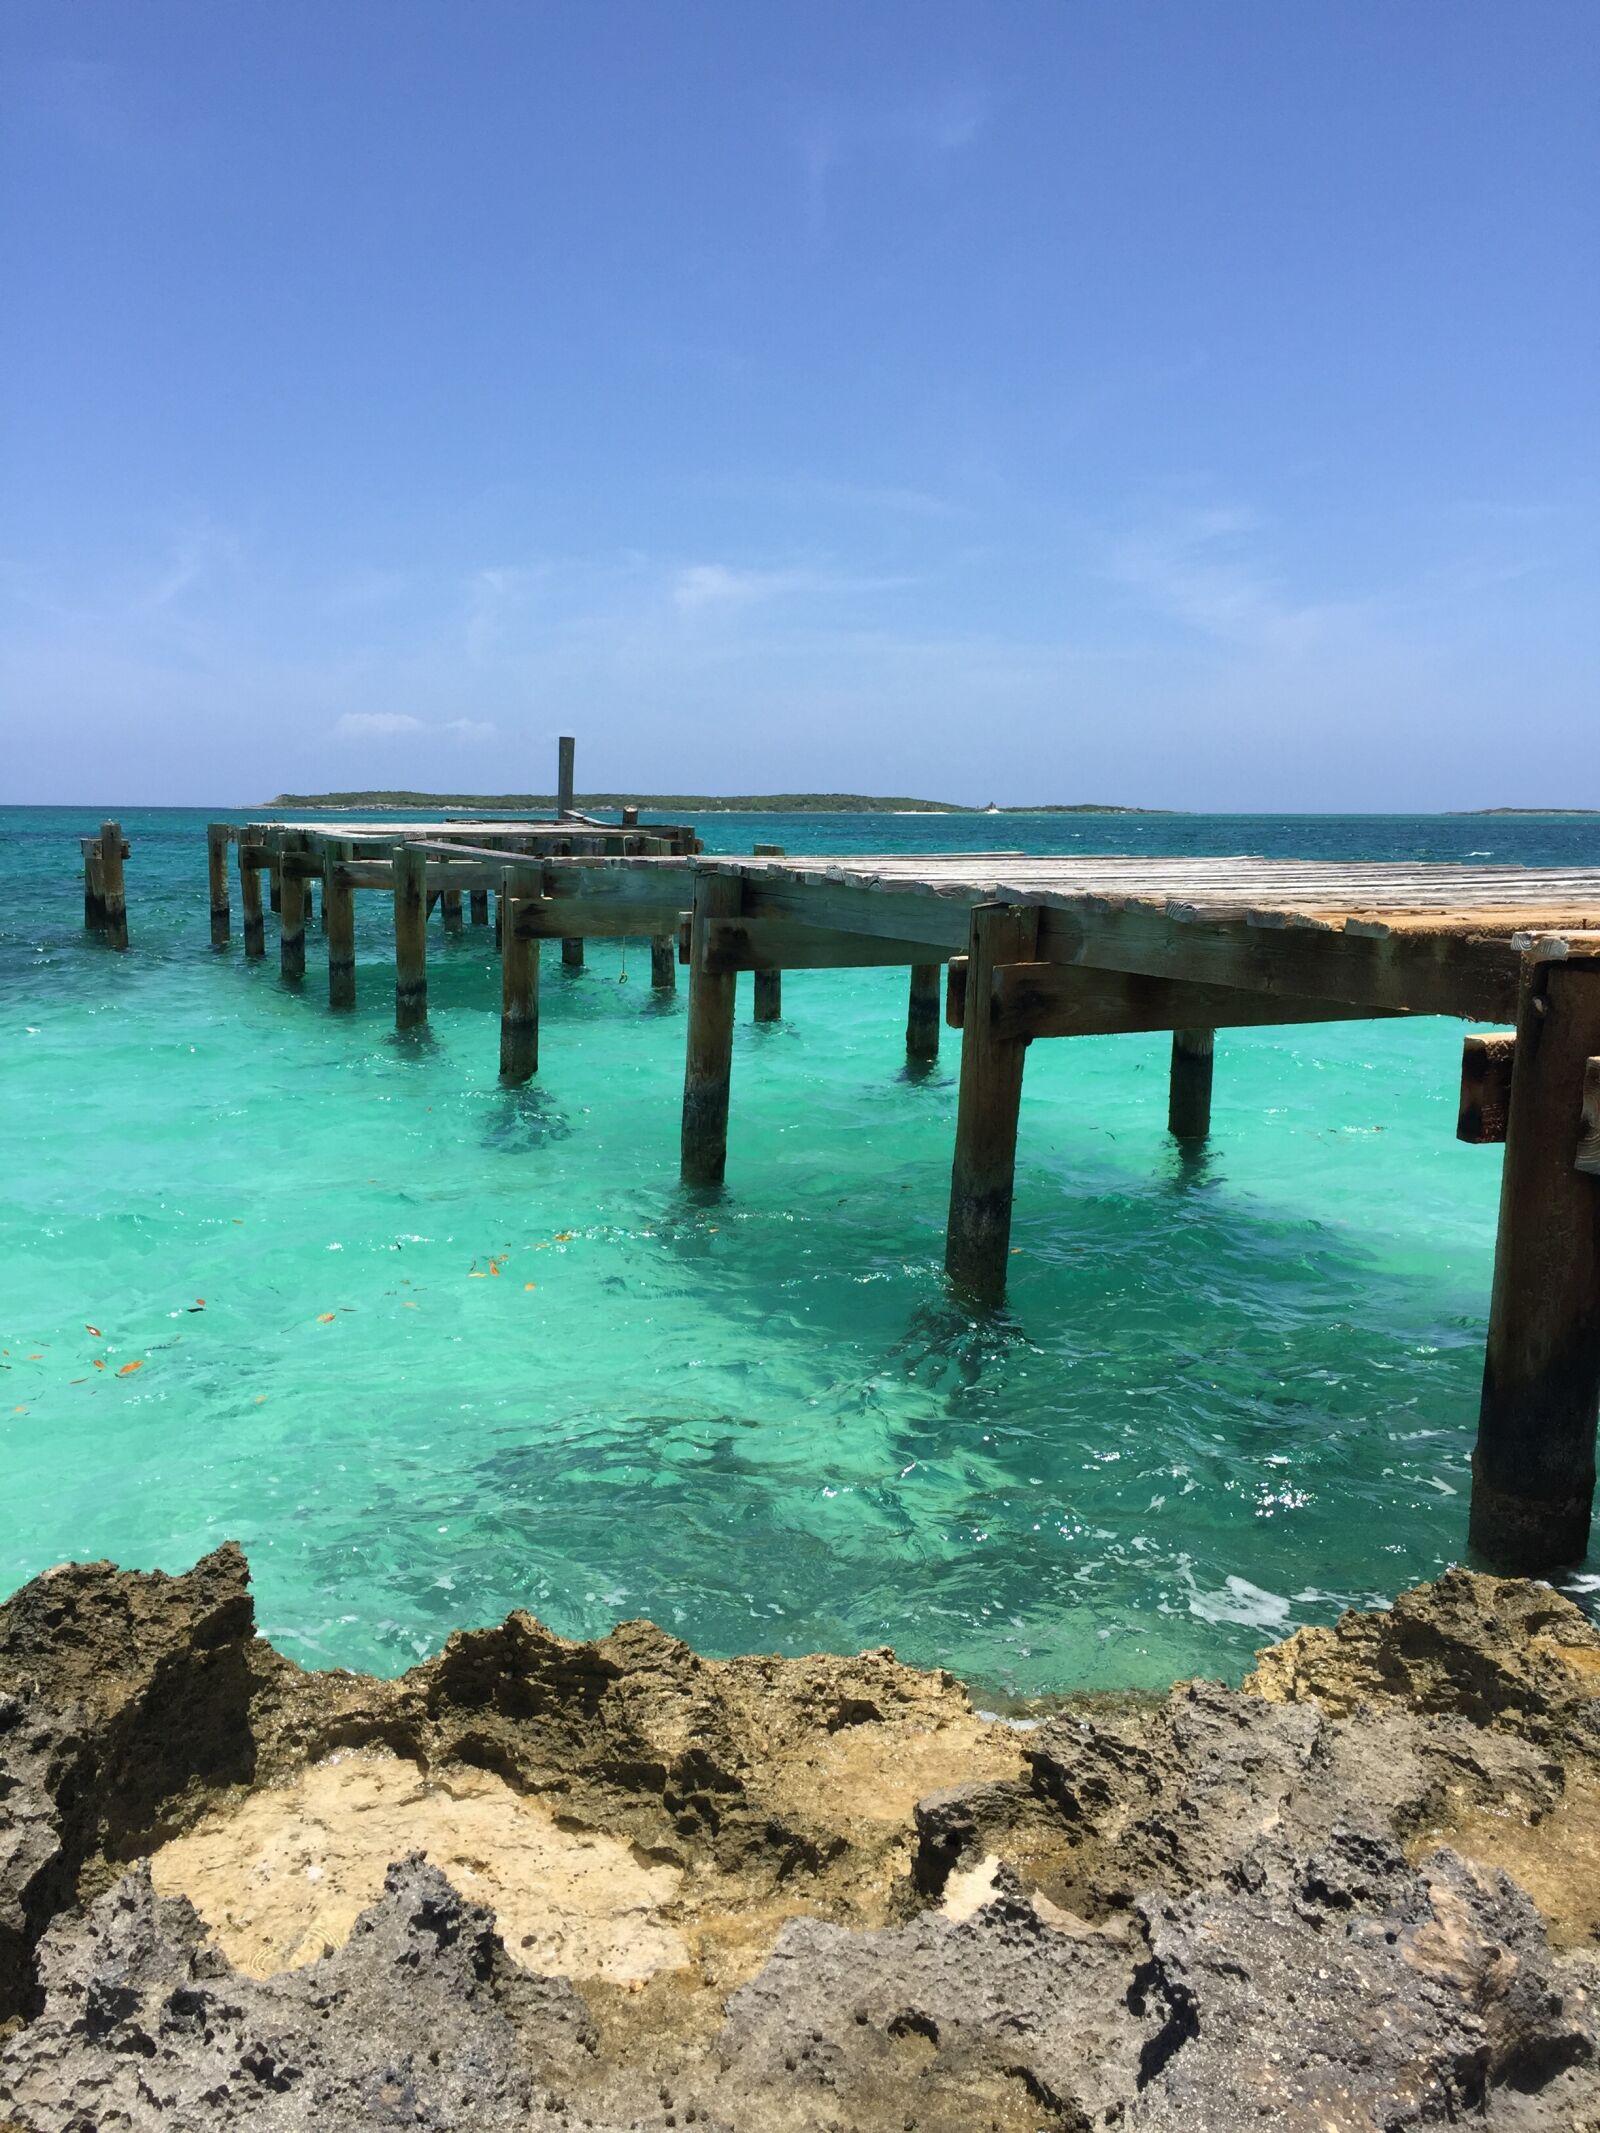 Apple iPhone 6 sample photo. Ocean, bahamas, beach photography